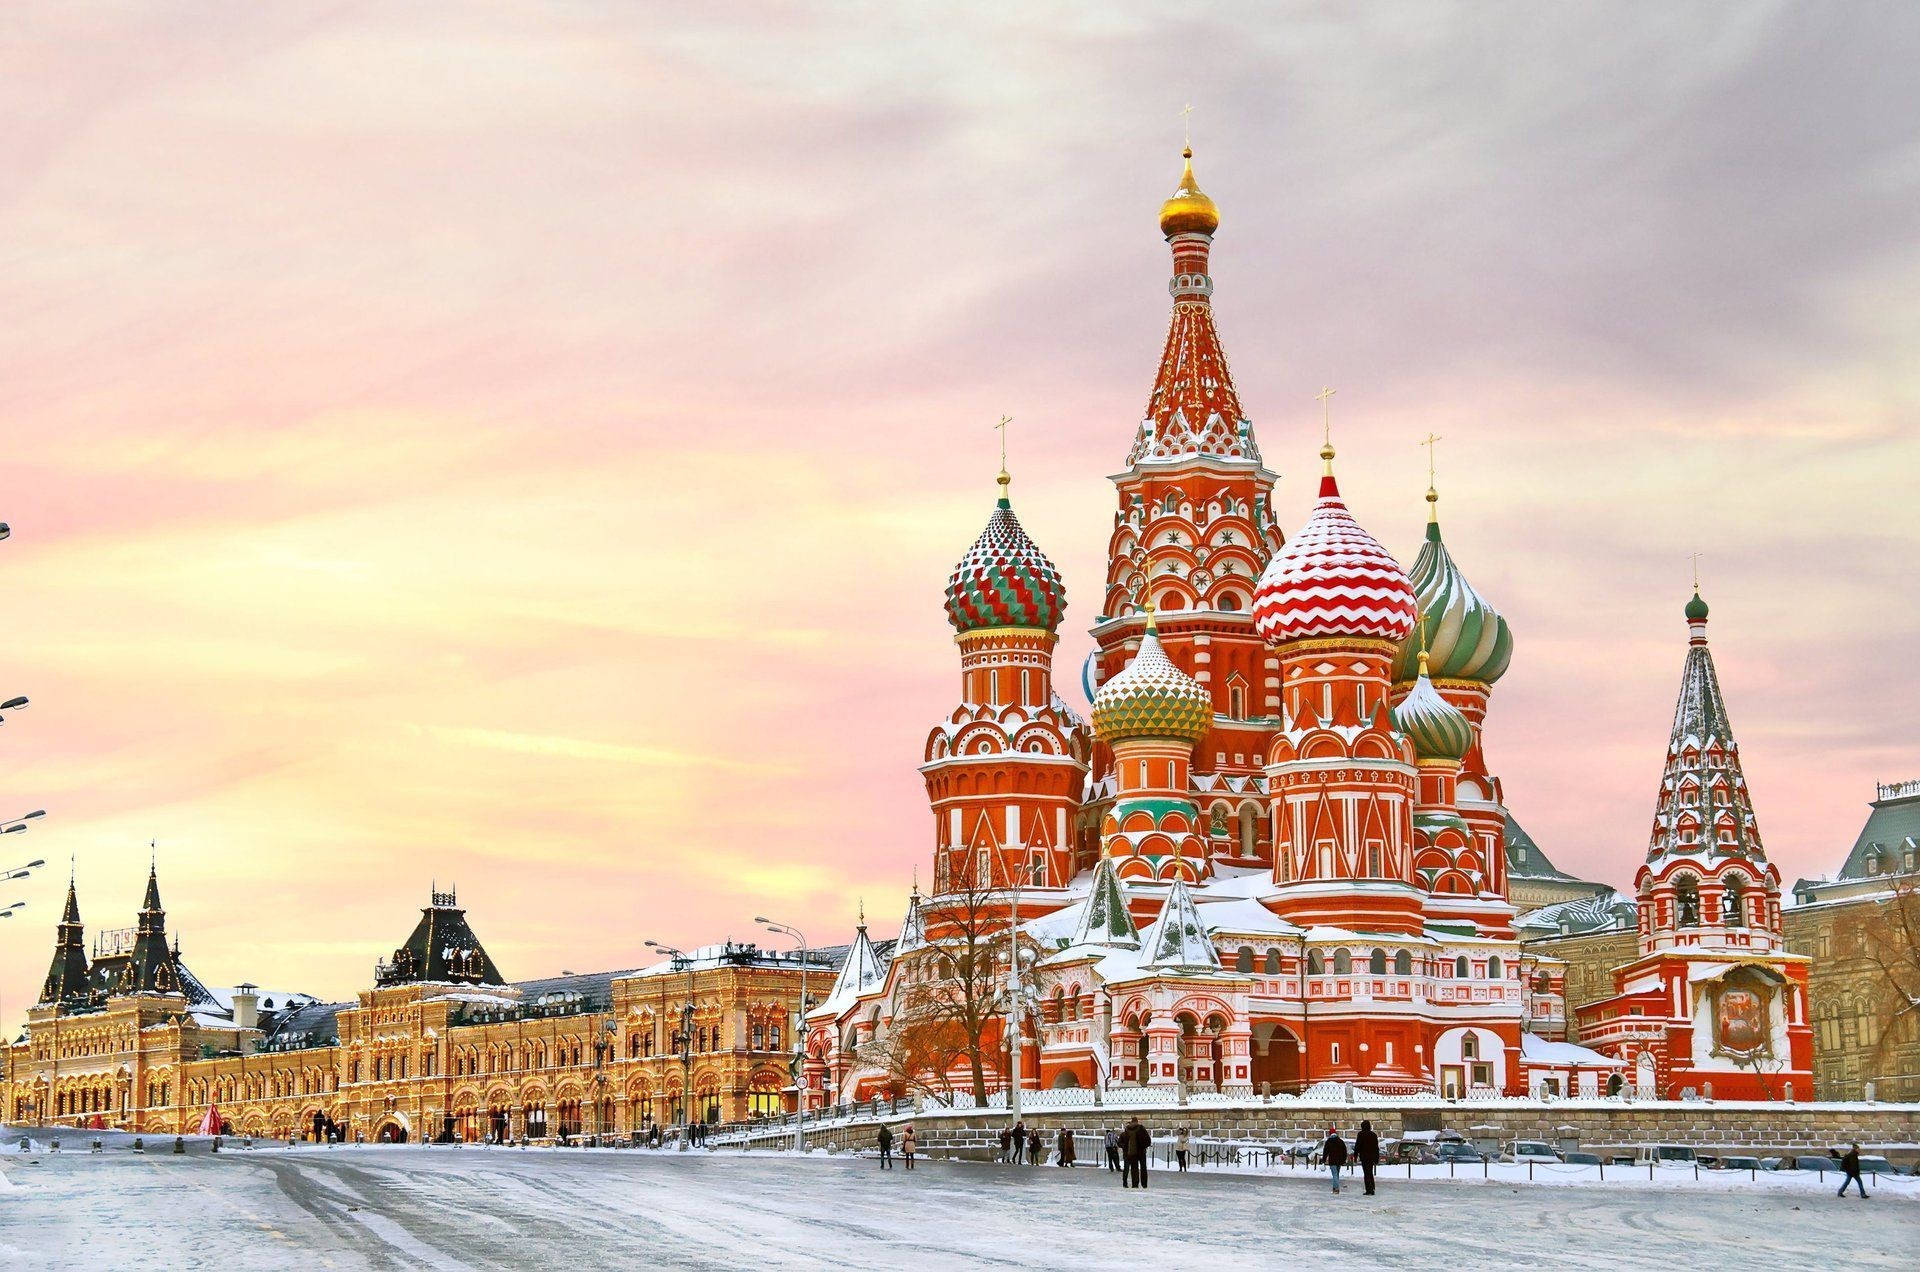 Thủ đô Moscow, nước Nga là trung tâm của sự phục hưng văn hóa với các trung tâm thiết kế hiện đại, các quán bar và nhà hàng sang trọng